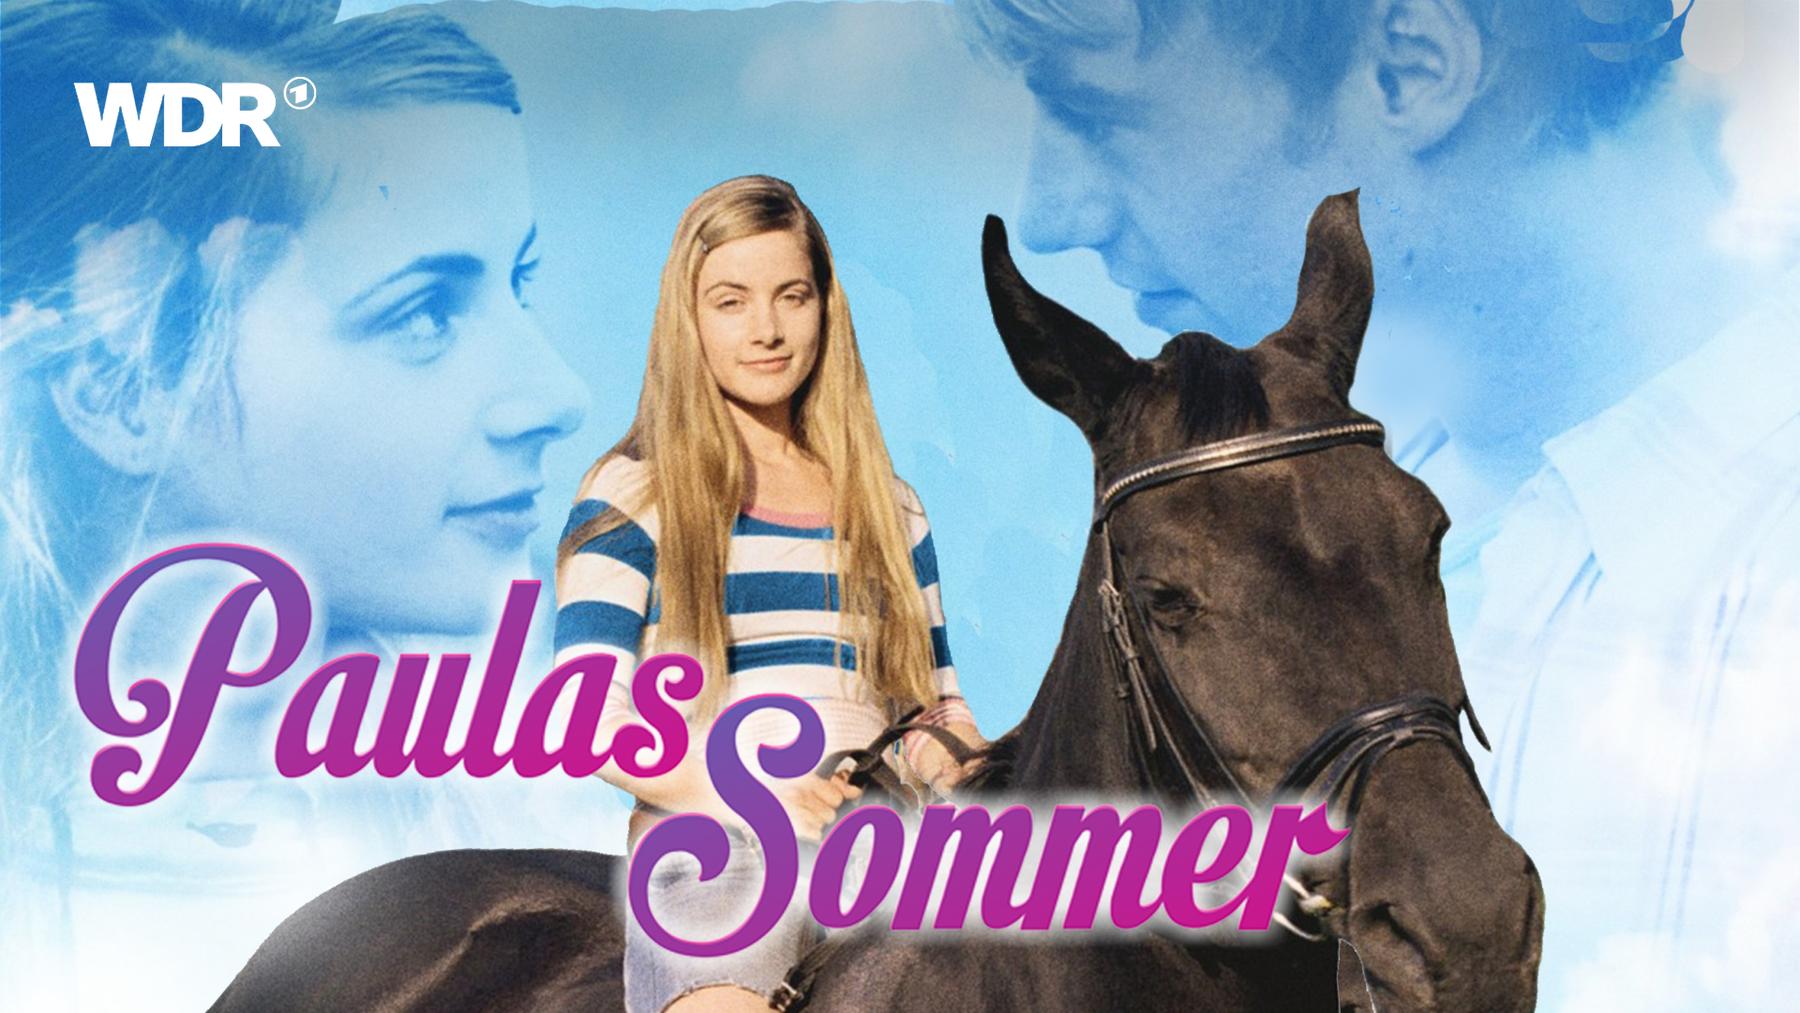 Paulas Sommer